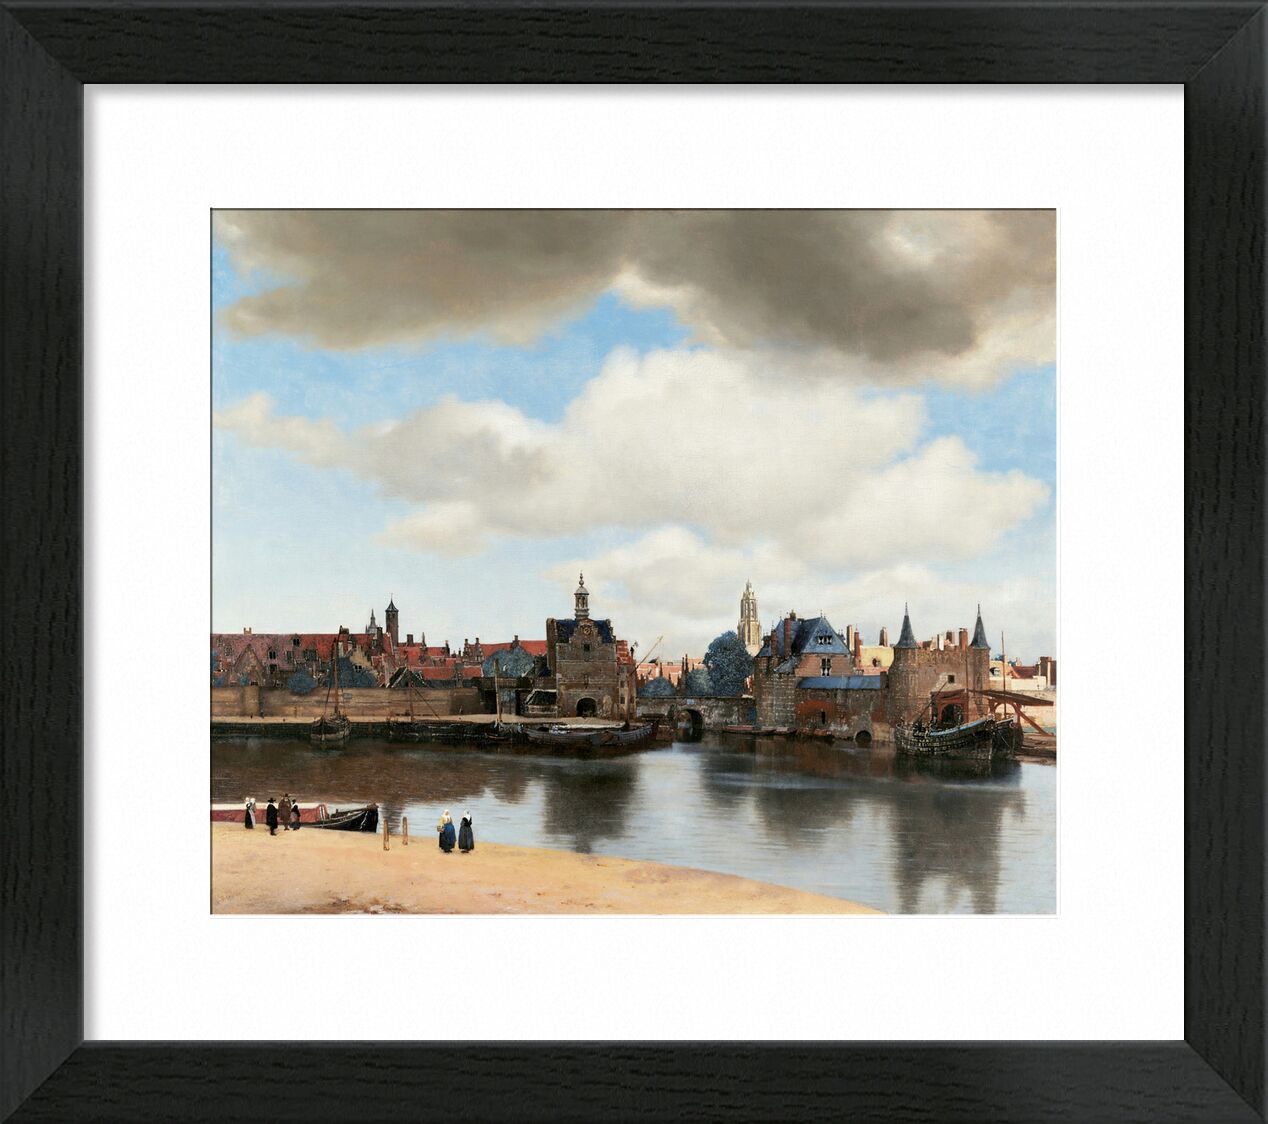 Ansicht von Delft - Vermeer von Bildende Kunst, Prodi Art, Johannes Vermeer, Vermeer, Delft, Wolken, Himmel, Hollande, Boot, Hafen, Stadt